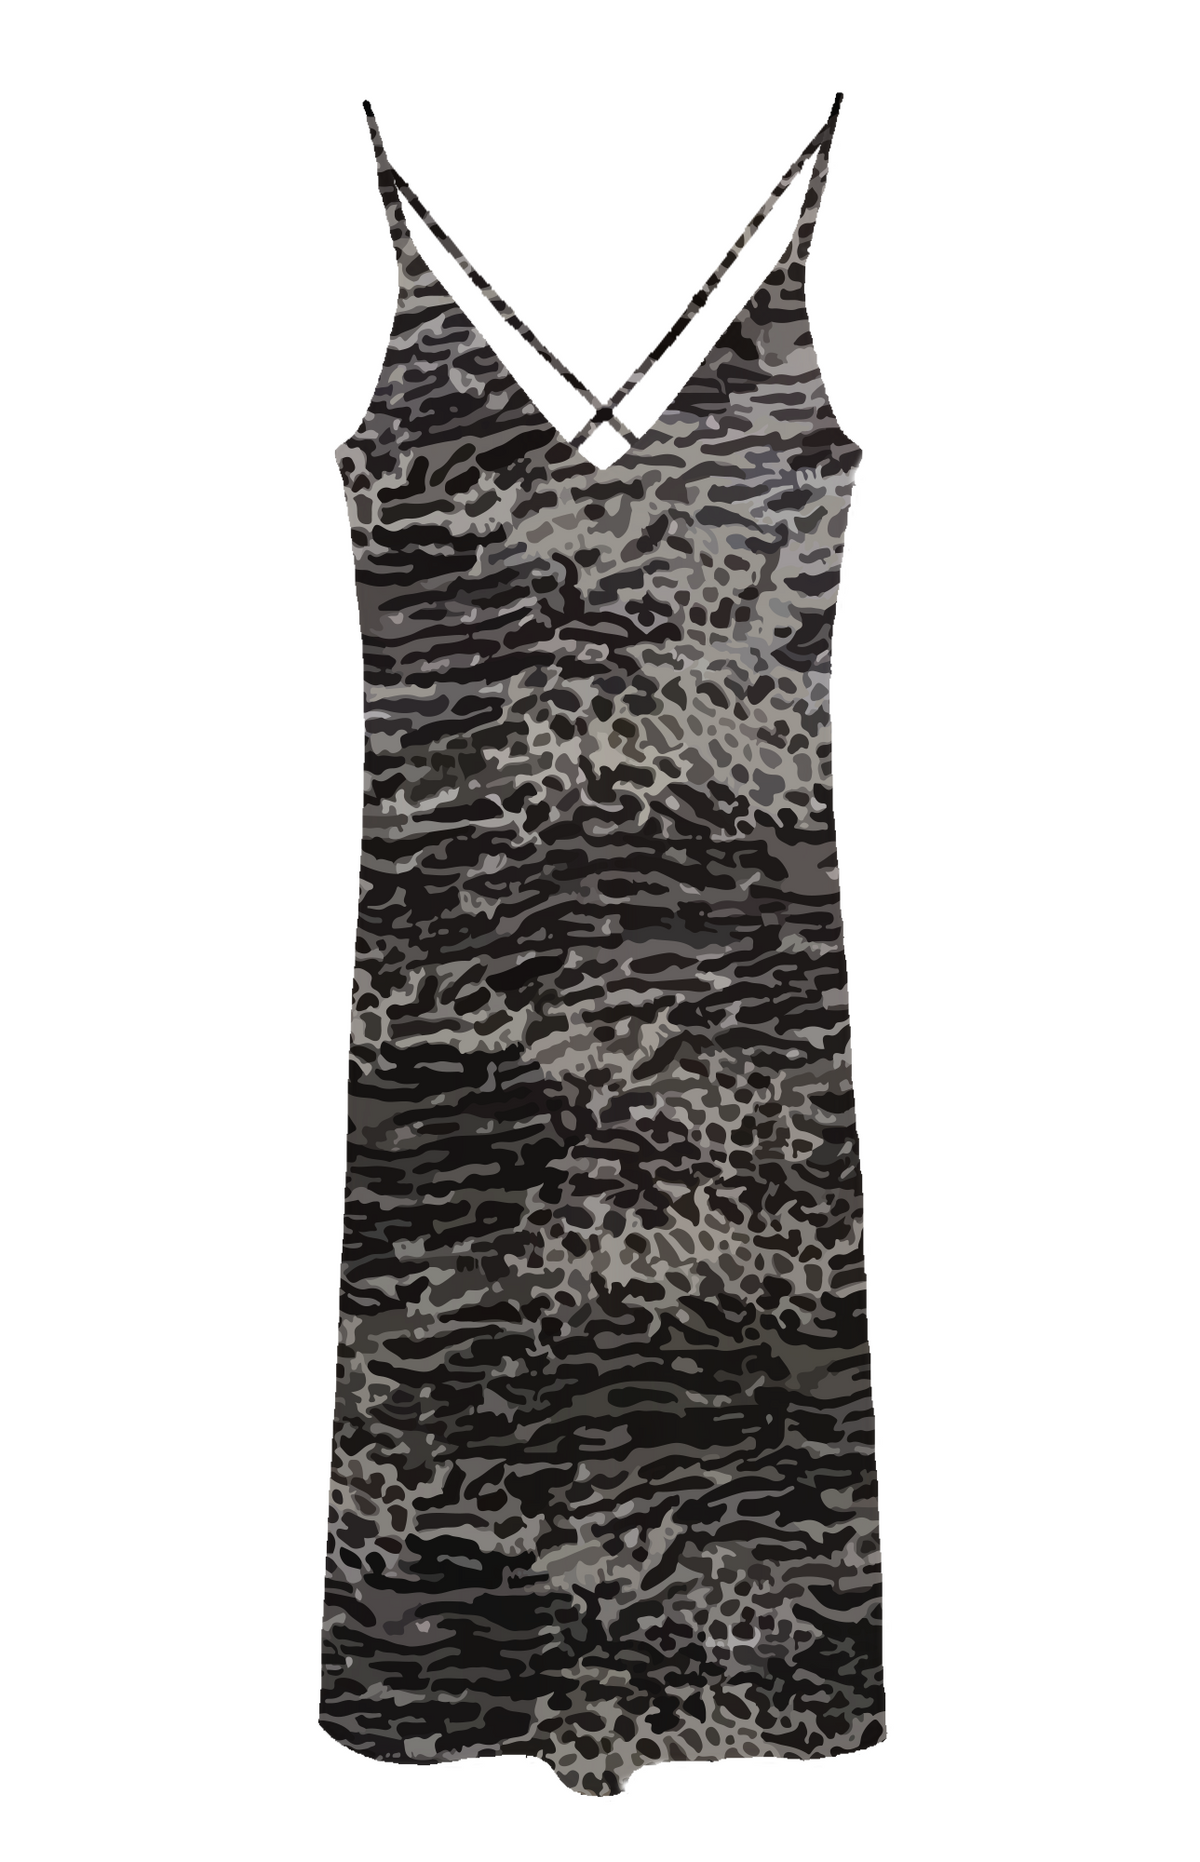 Leopard Print silk Nightgown